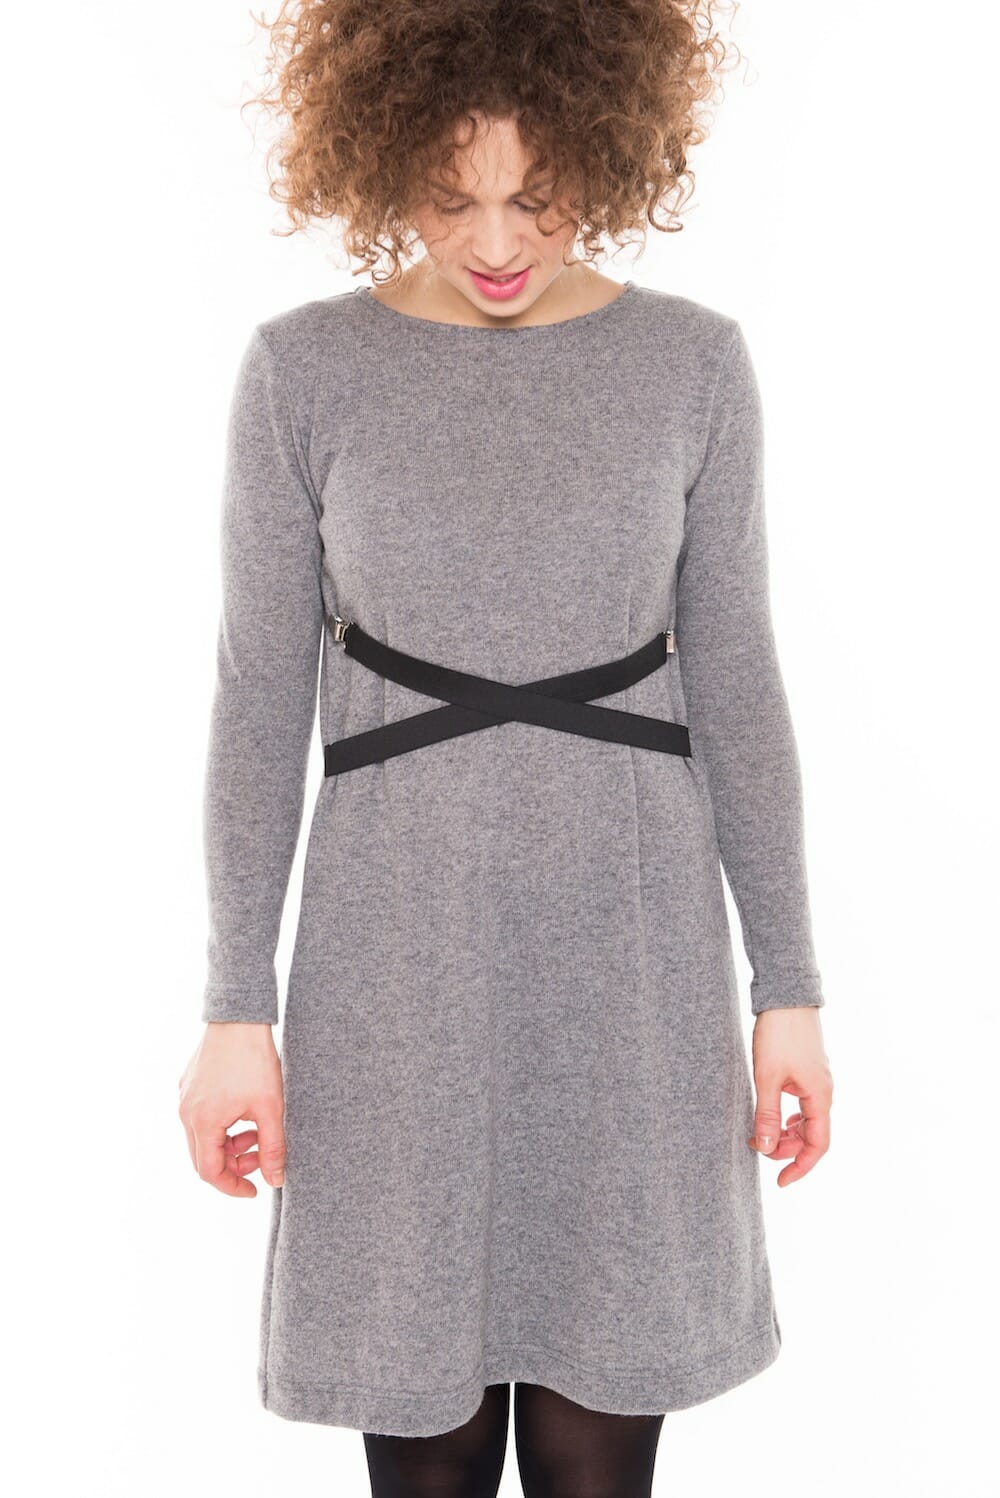 Long sleeve sweater dress in grey DANCE